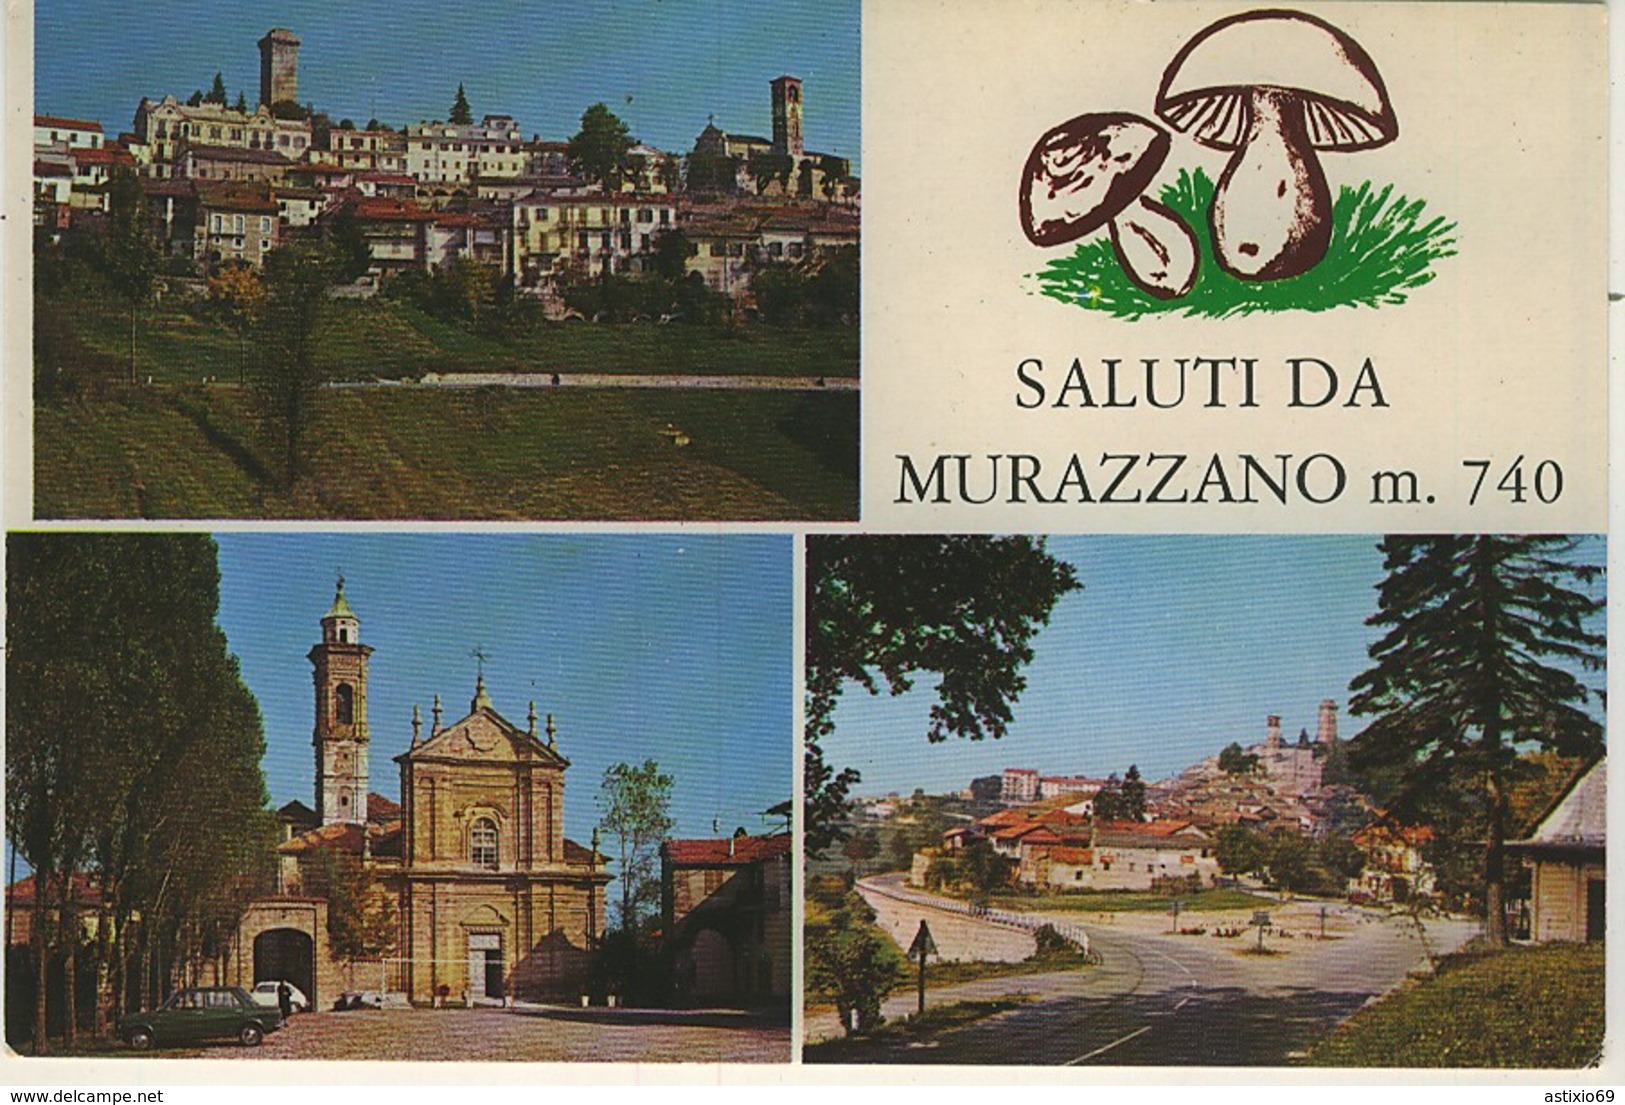 CUNEO SALUTI DA MURAZZANO FUNGHI PORCINI - Cuneo